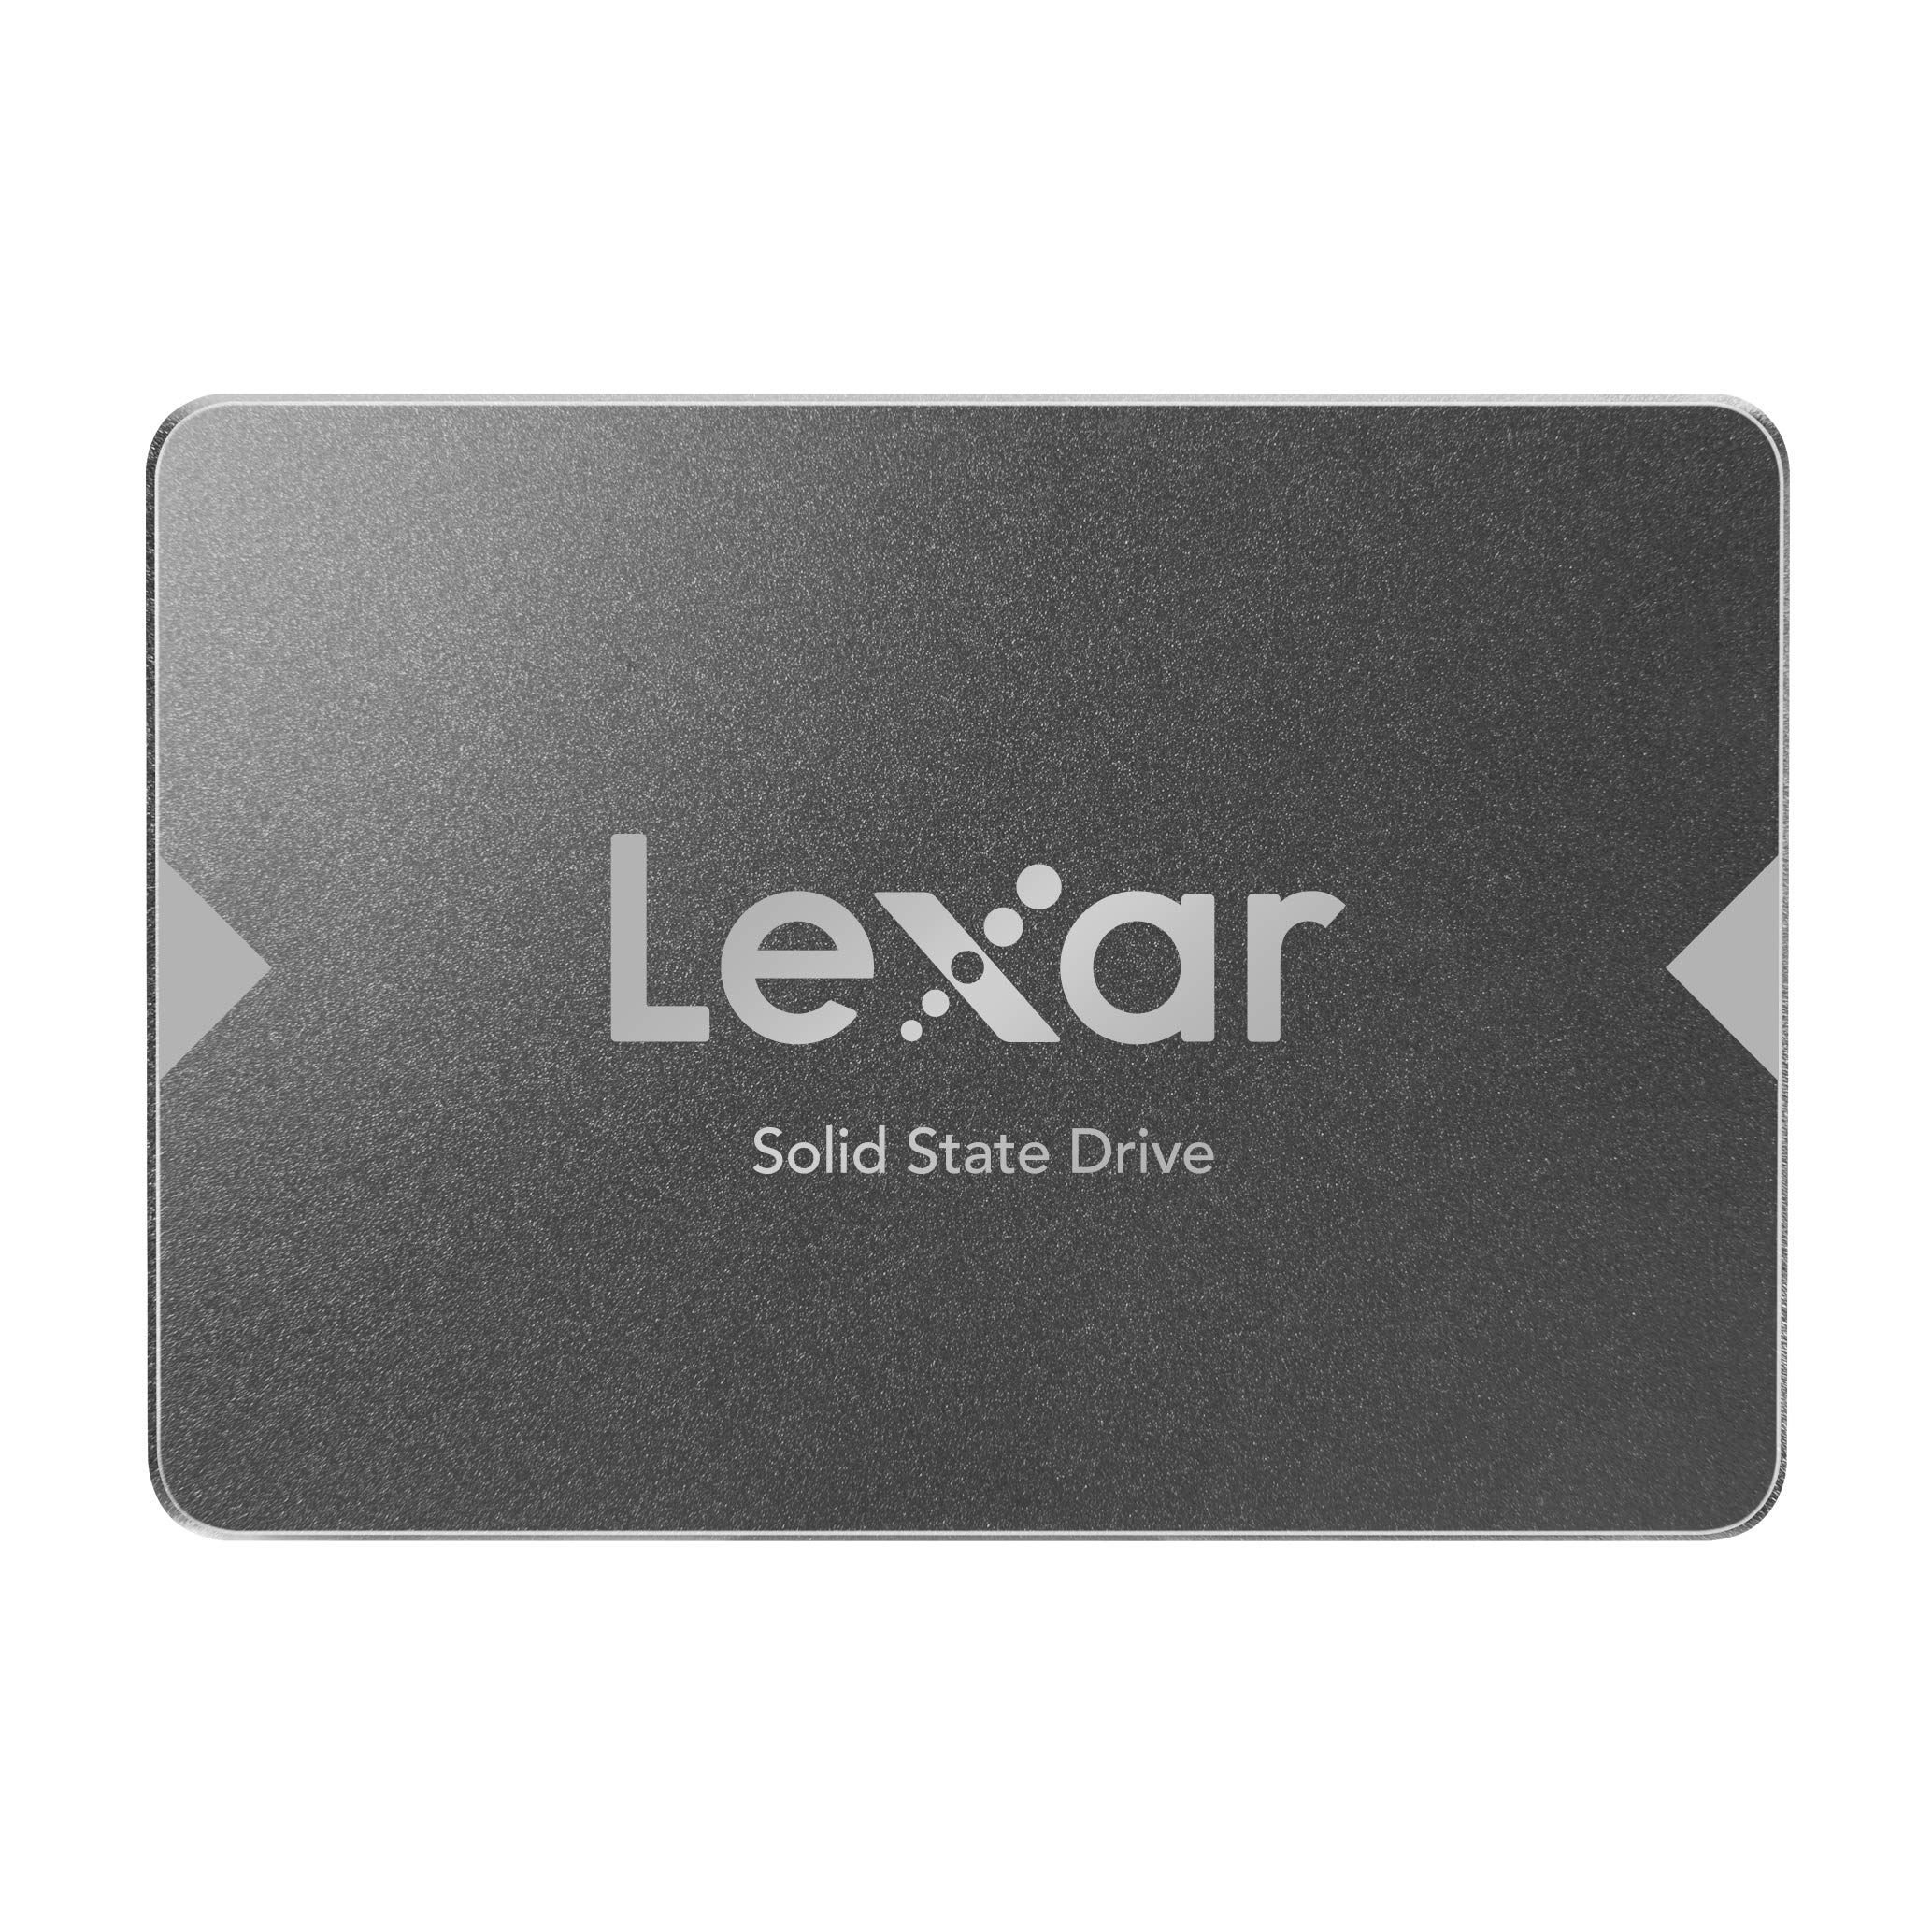 Lexar NS100 512GB 10個パック 2.5インチ SATA III 内蔵SSD ソリッドステートドライブ 最大550MB秒読み